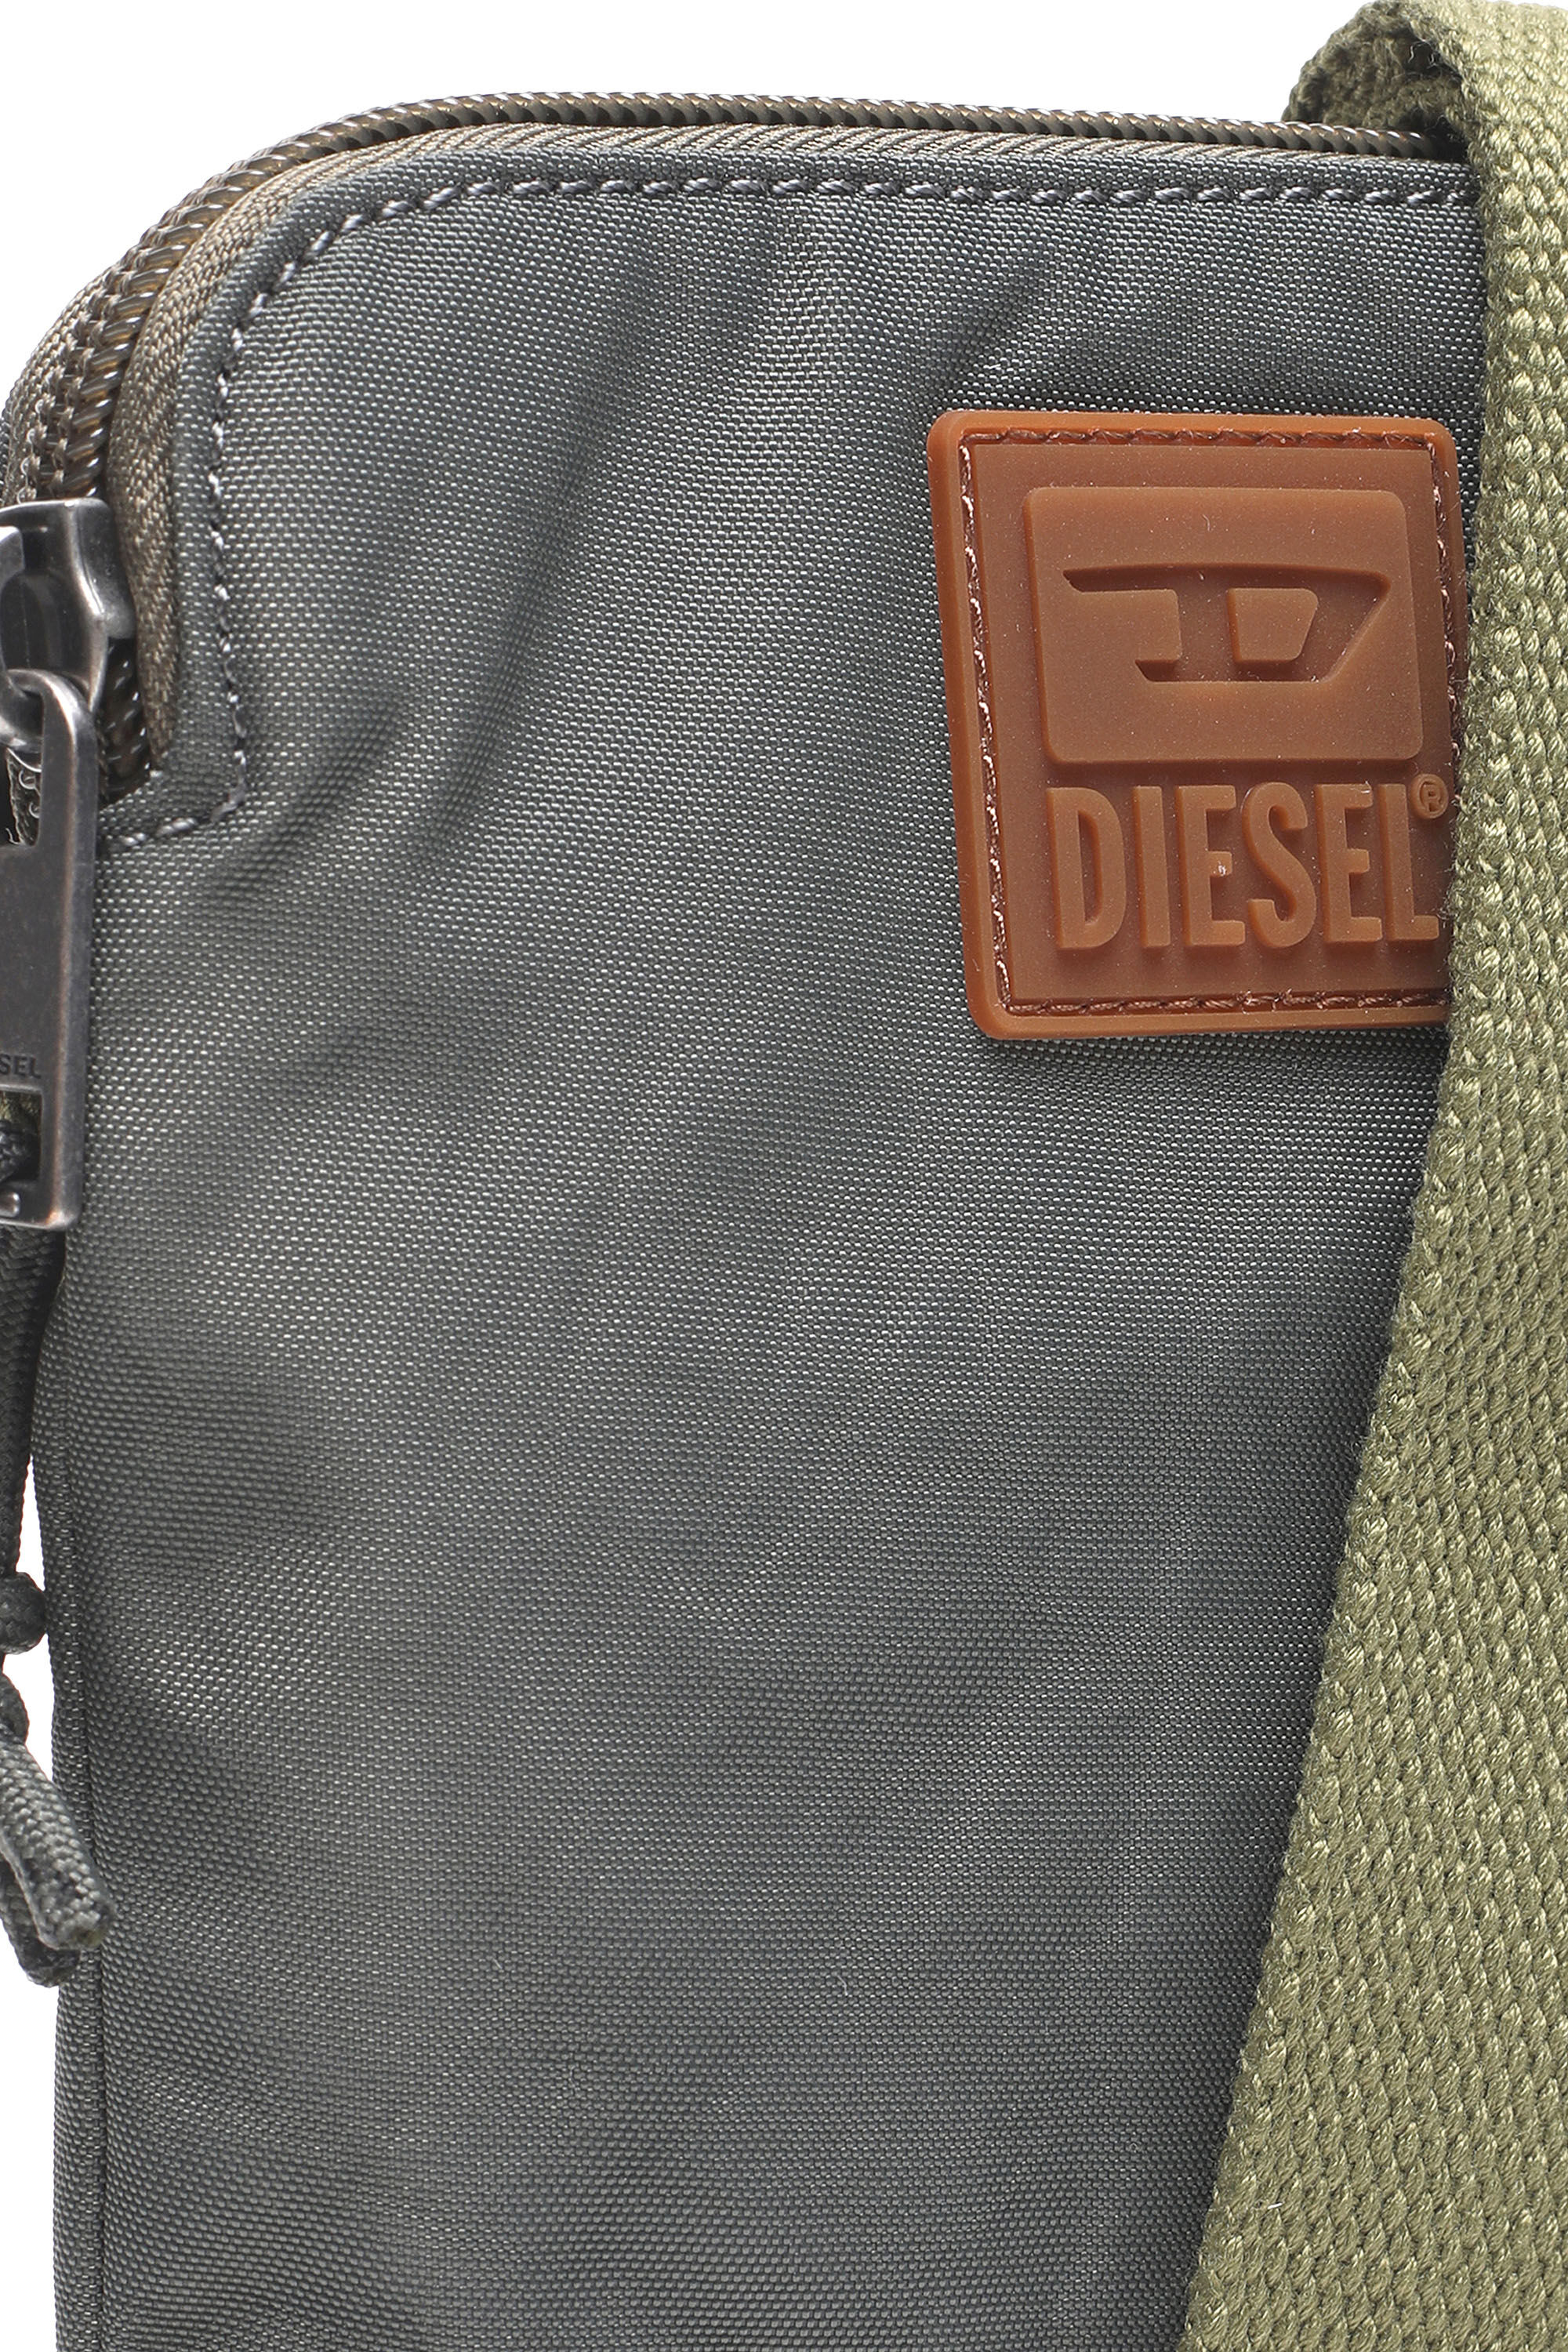 Diesel - VYGA, Grey - Image 5